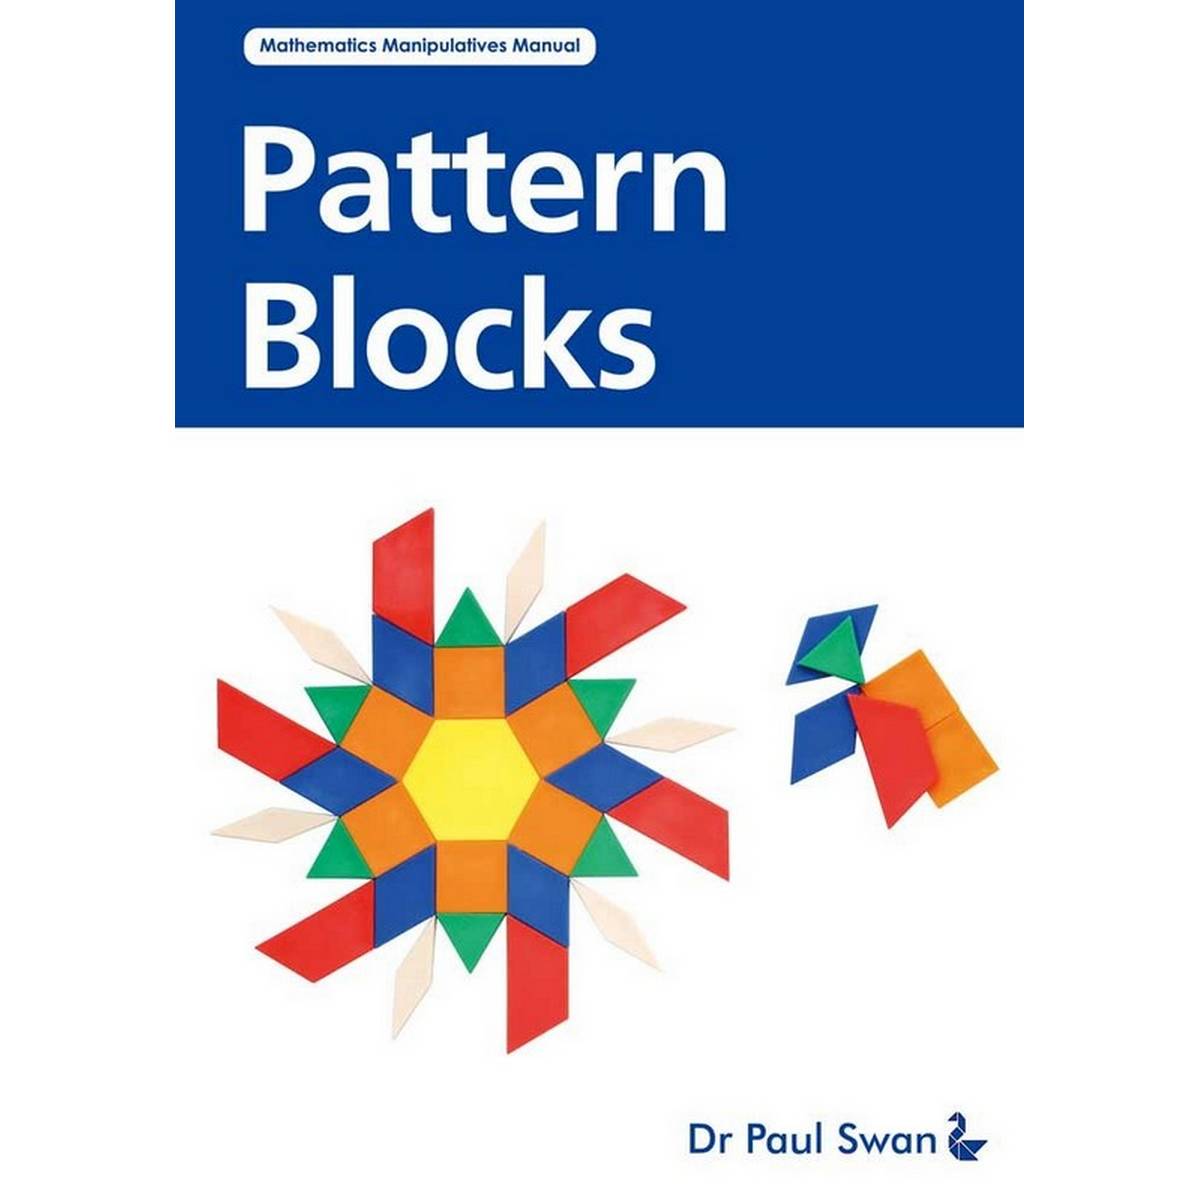 Pattern Blocks: Mathematics Manipulatives Manual